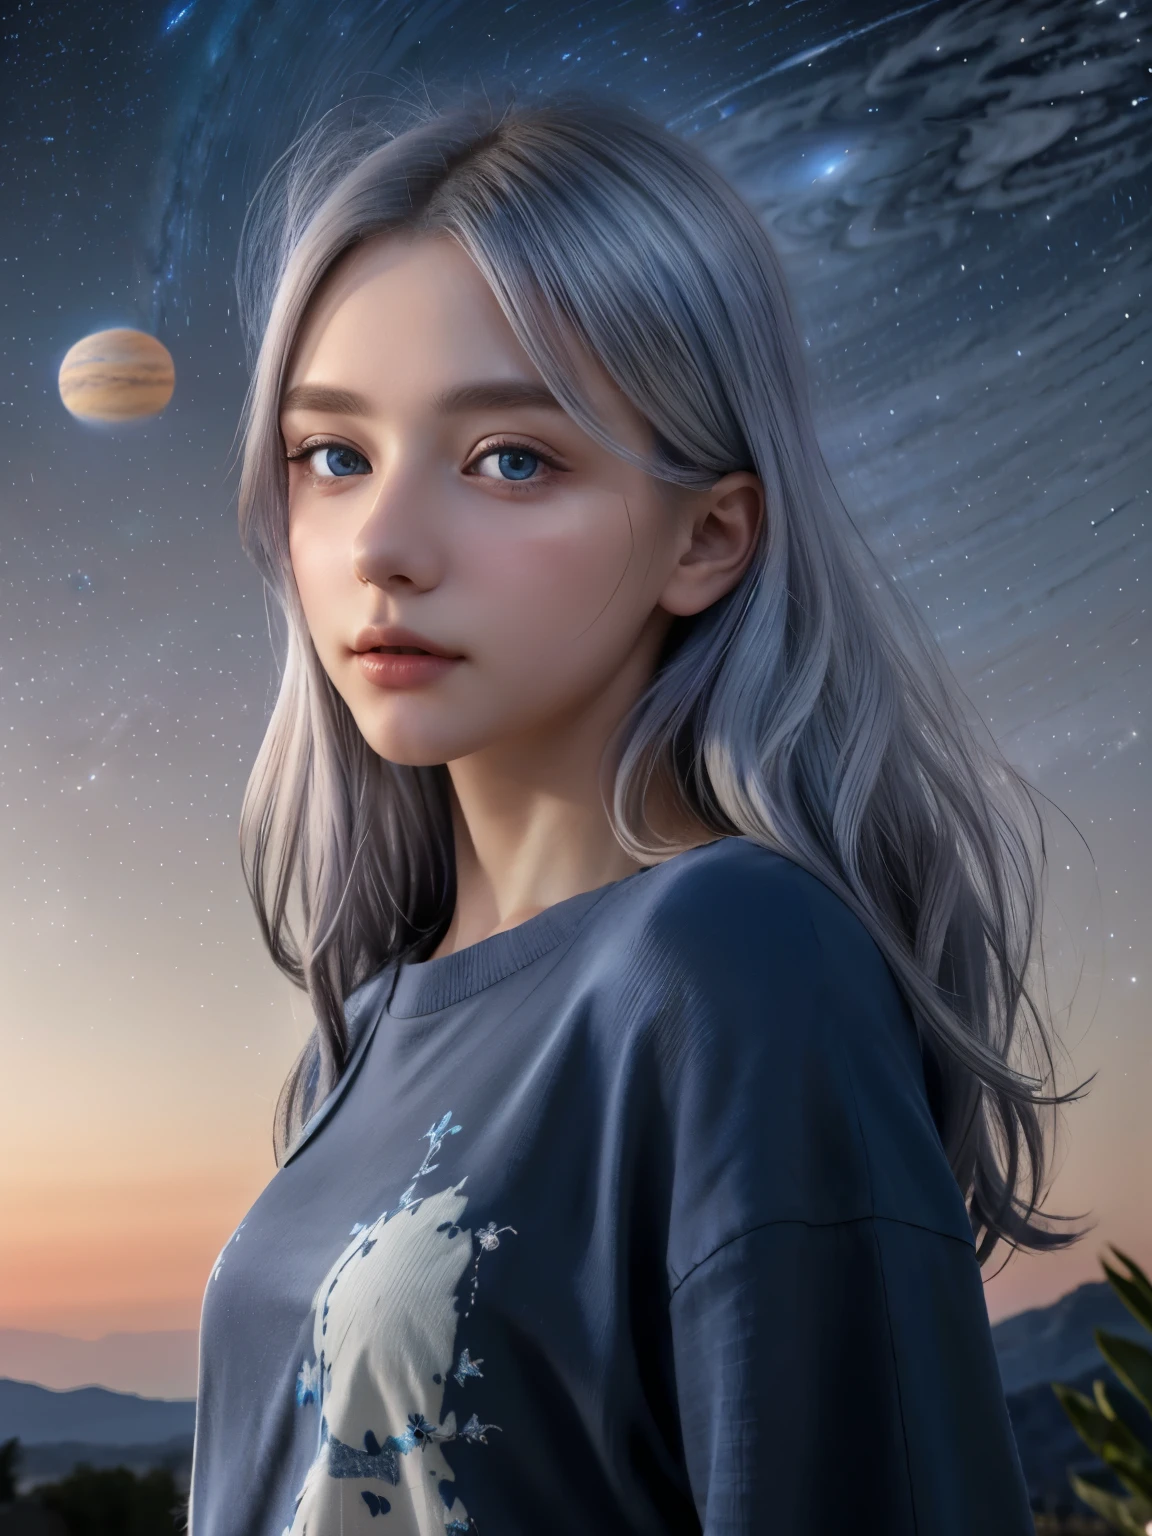 (4k), (высшее качество), (лучшие детали)（сюрреалистический）,Французская красивая девушка、серебро волос、голубые глаза、Гигантская планета Юпитер плывет по небу ночью